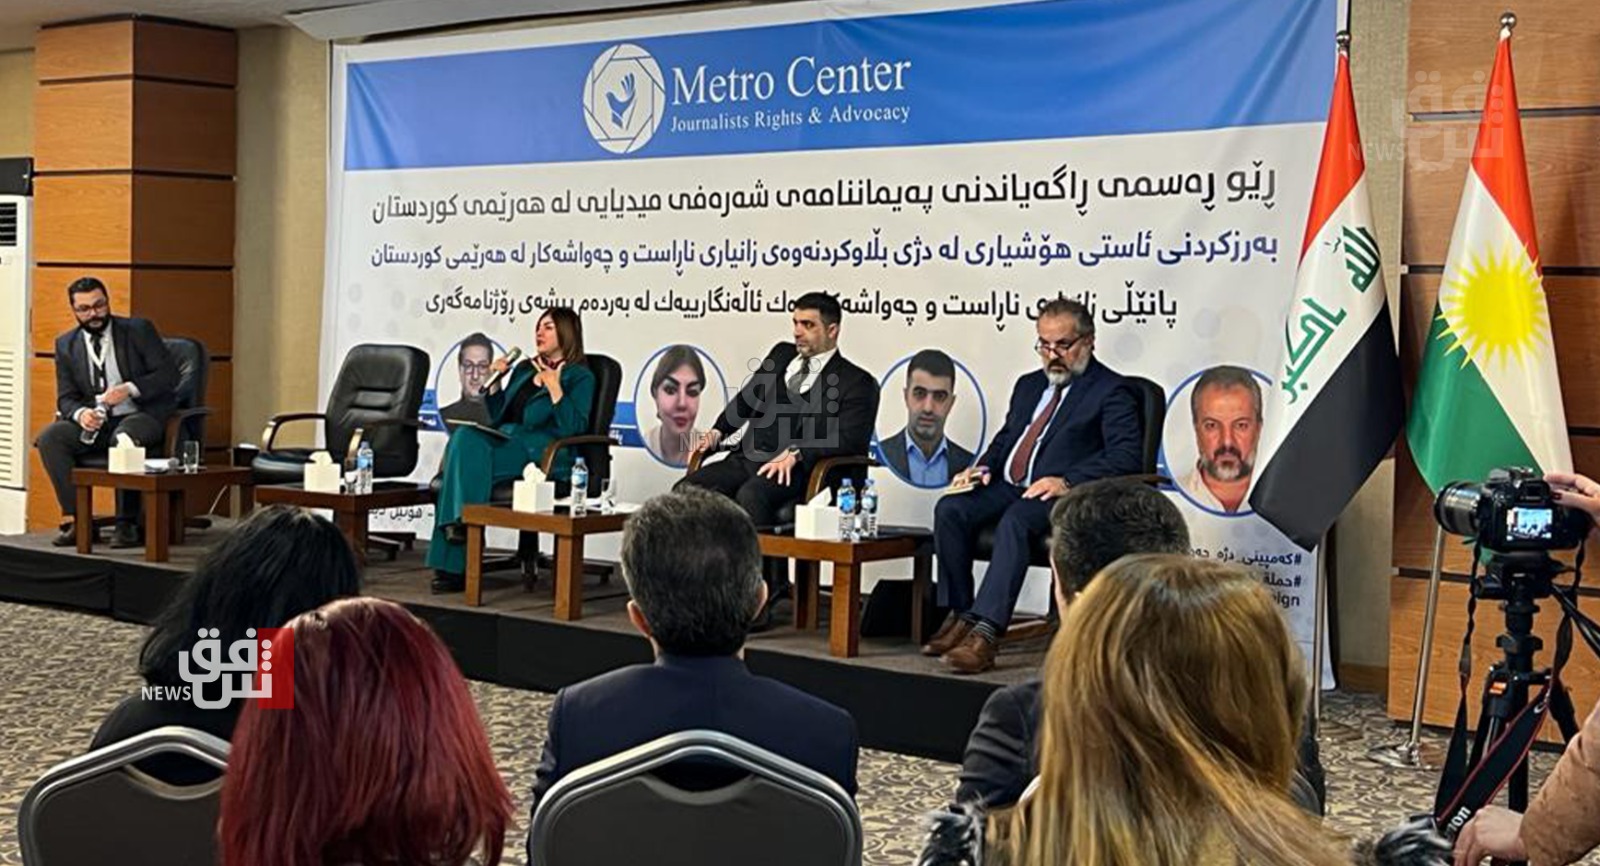 مركز حقوقي يعلن ميثاق شرف لمحاربة الاخبار "المضللة" في إقليم كوردستان